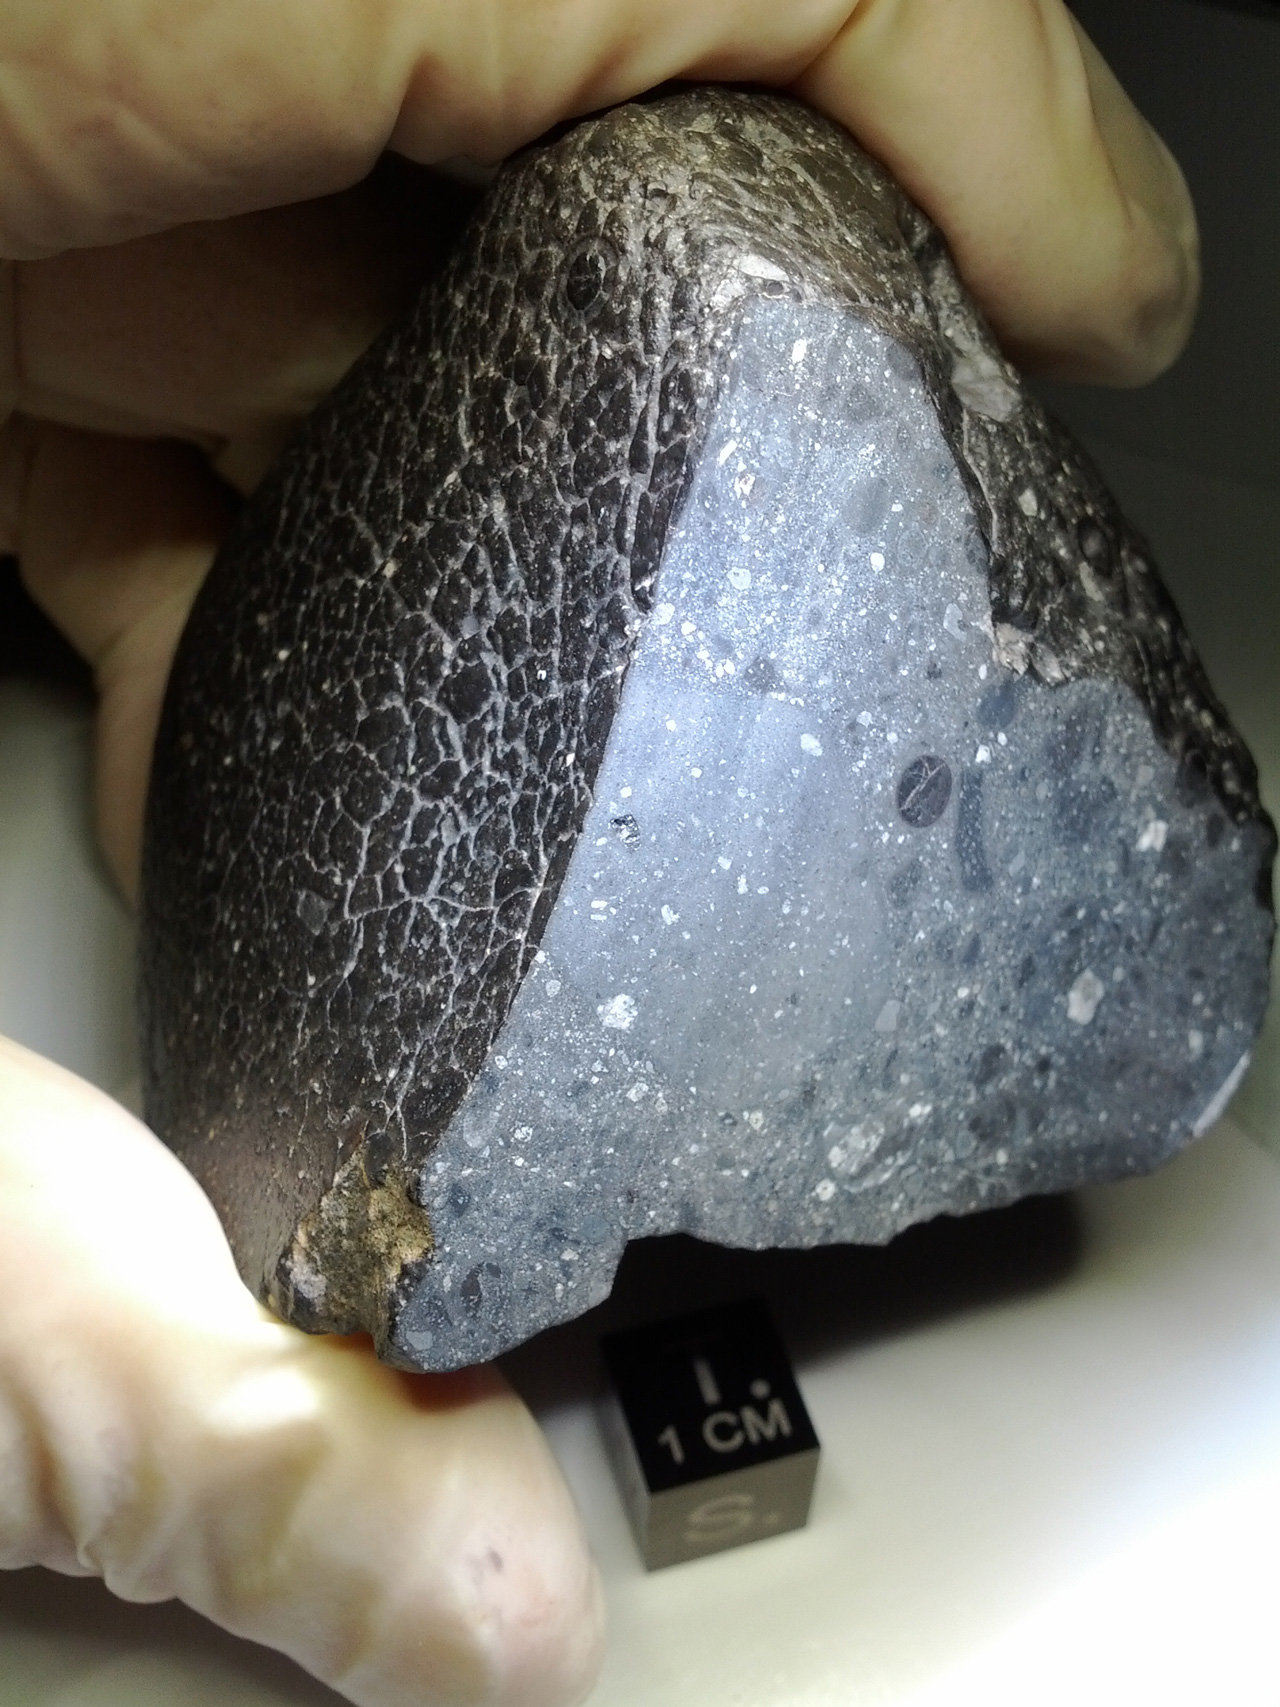 Black meteorite held between thumb and finger.